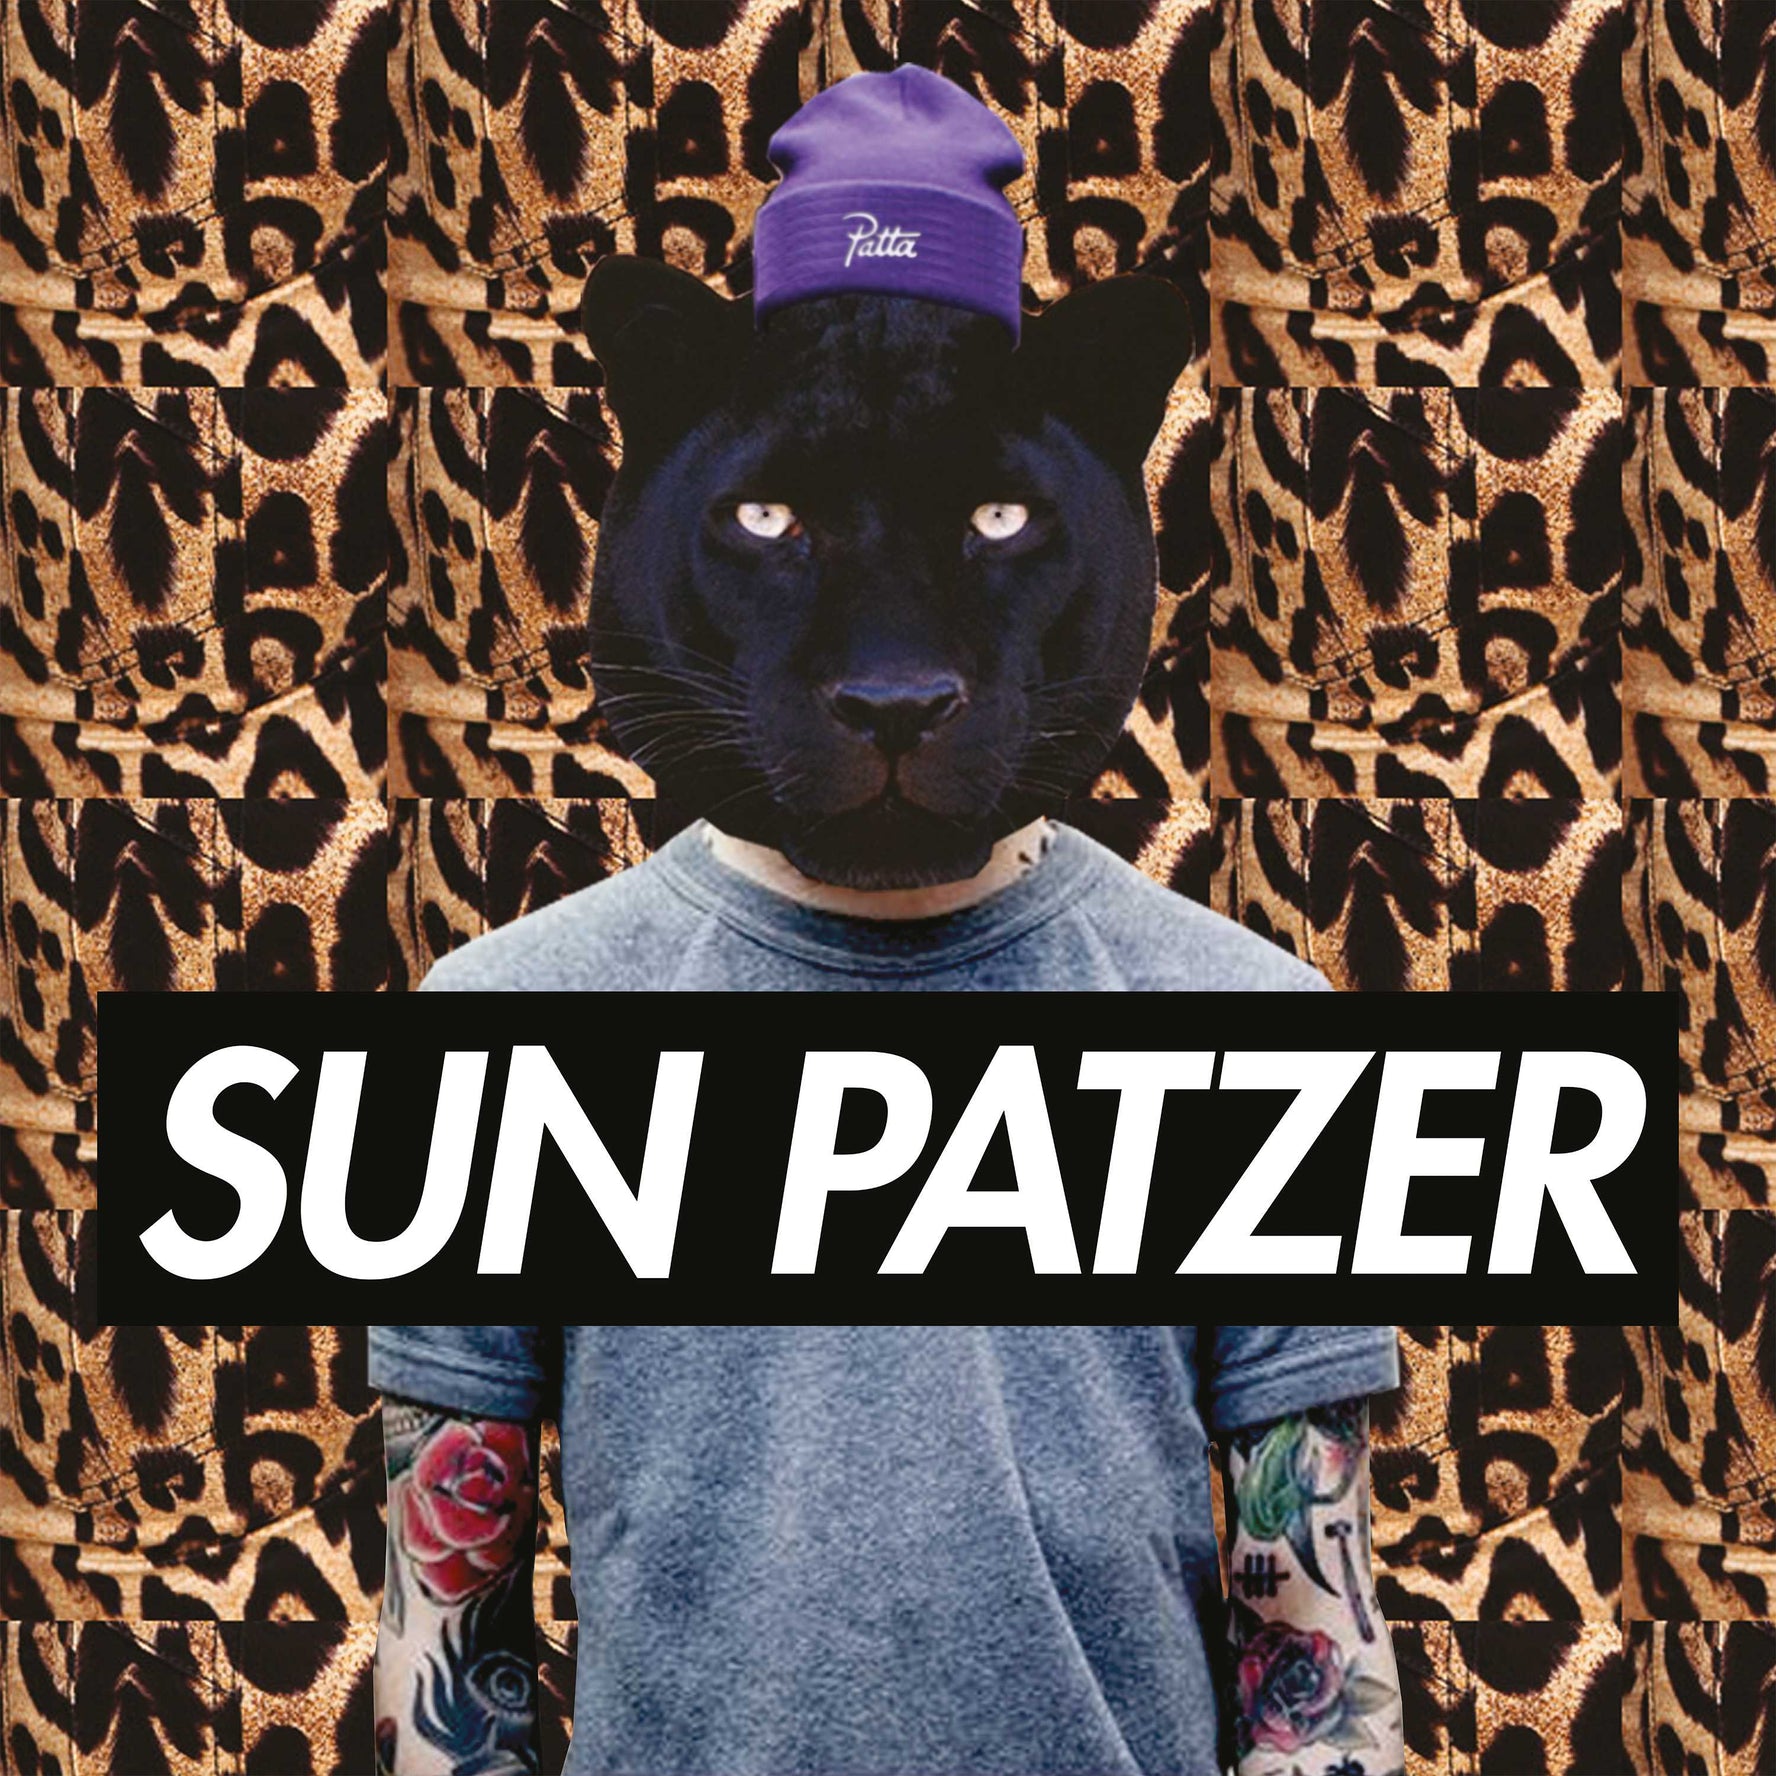 Sun Patzer